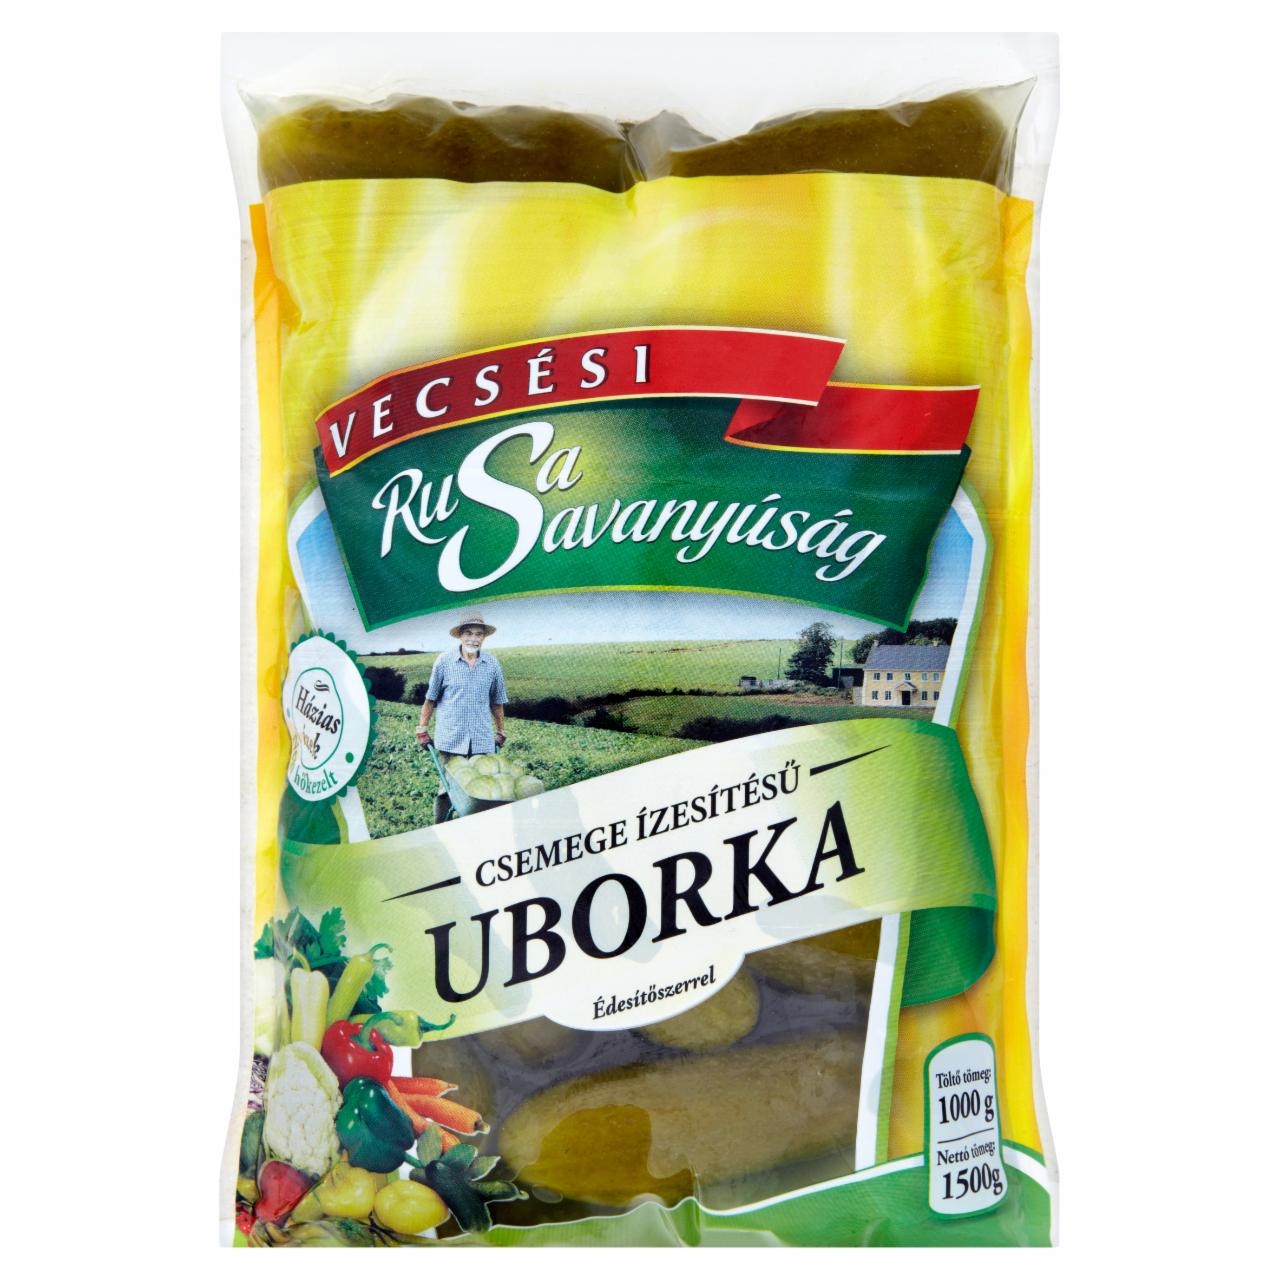 Képek - Rusa Savanyúság csemege ízesítésű uborka édesítőszerrel 1500 g